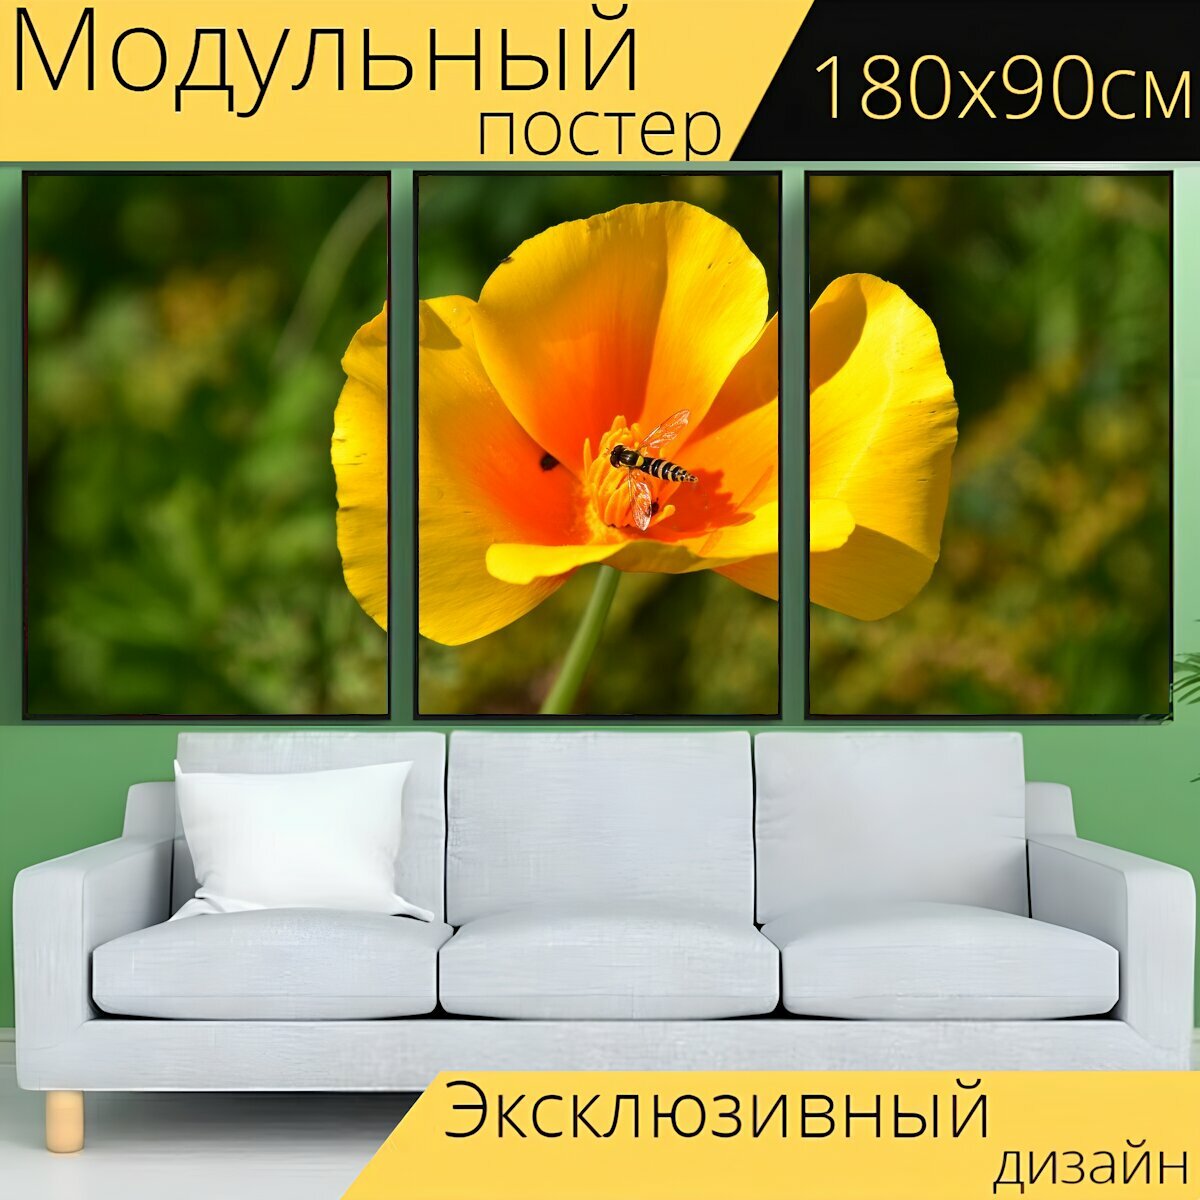 Модульный постер "Цветок желтый и оранжевый, зеленый стебель, зеленые листья" 180 x 90 см. для интерьера